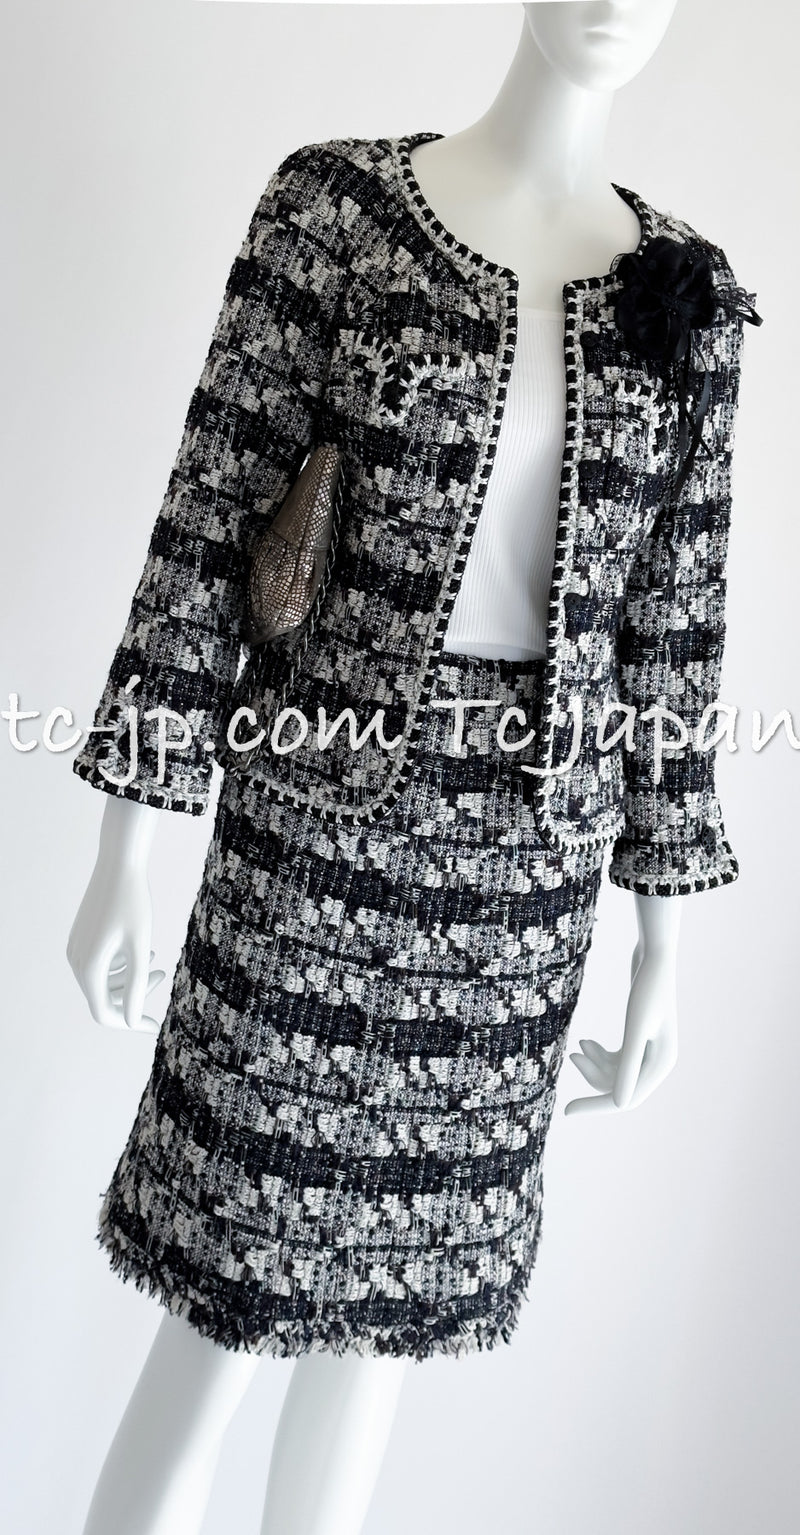 CHANEL 06C Black White Tweed Jacket Skirt Suit 36 38 シャネル ブラック・ホワイト・ツイード・ジャケット・スカート・スーツ 即発